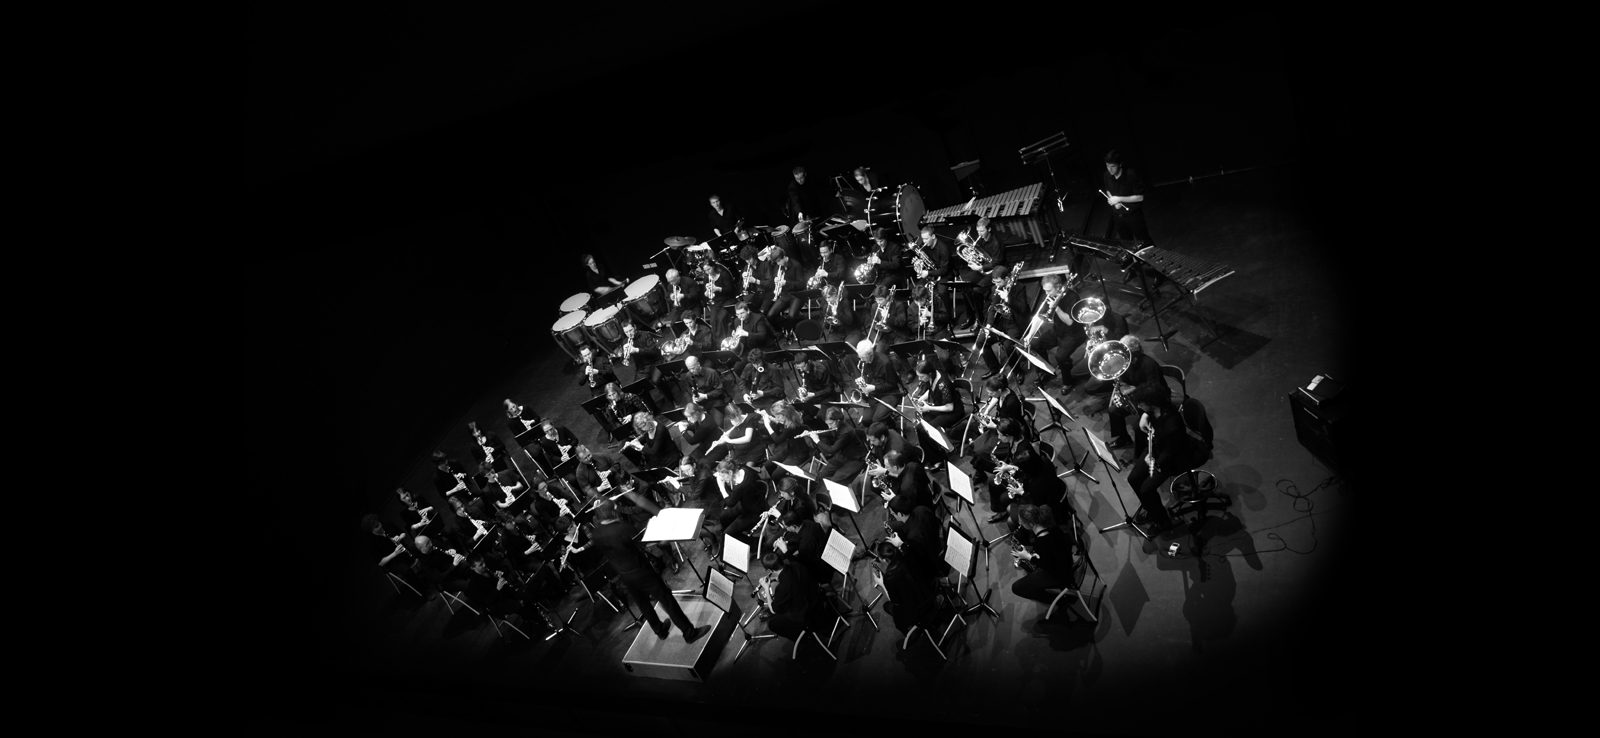 Vue generale de l'orchestre